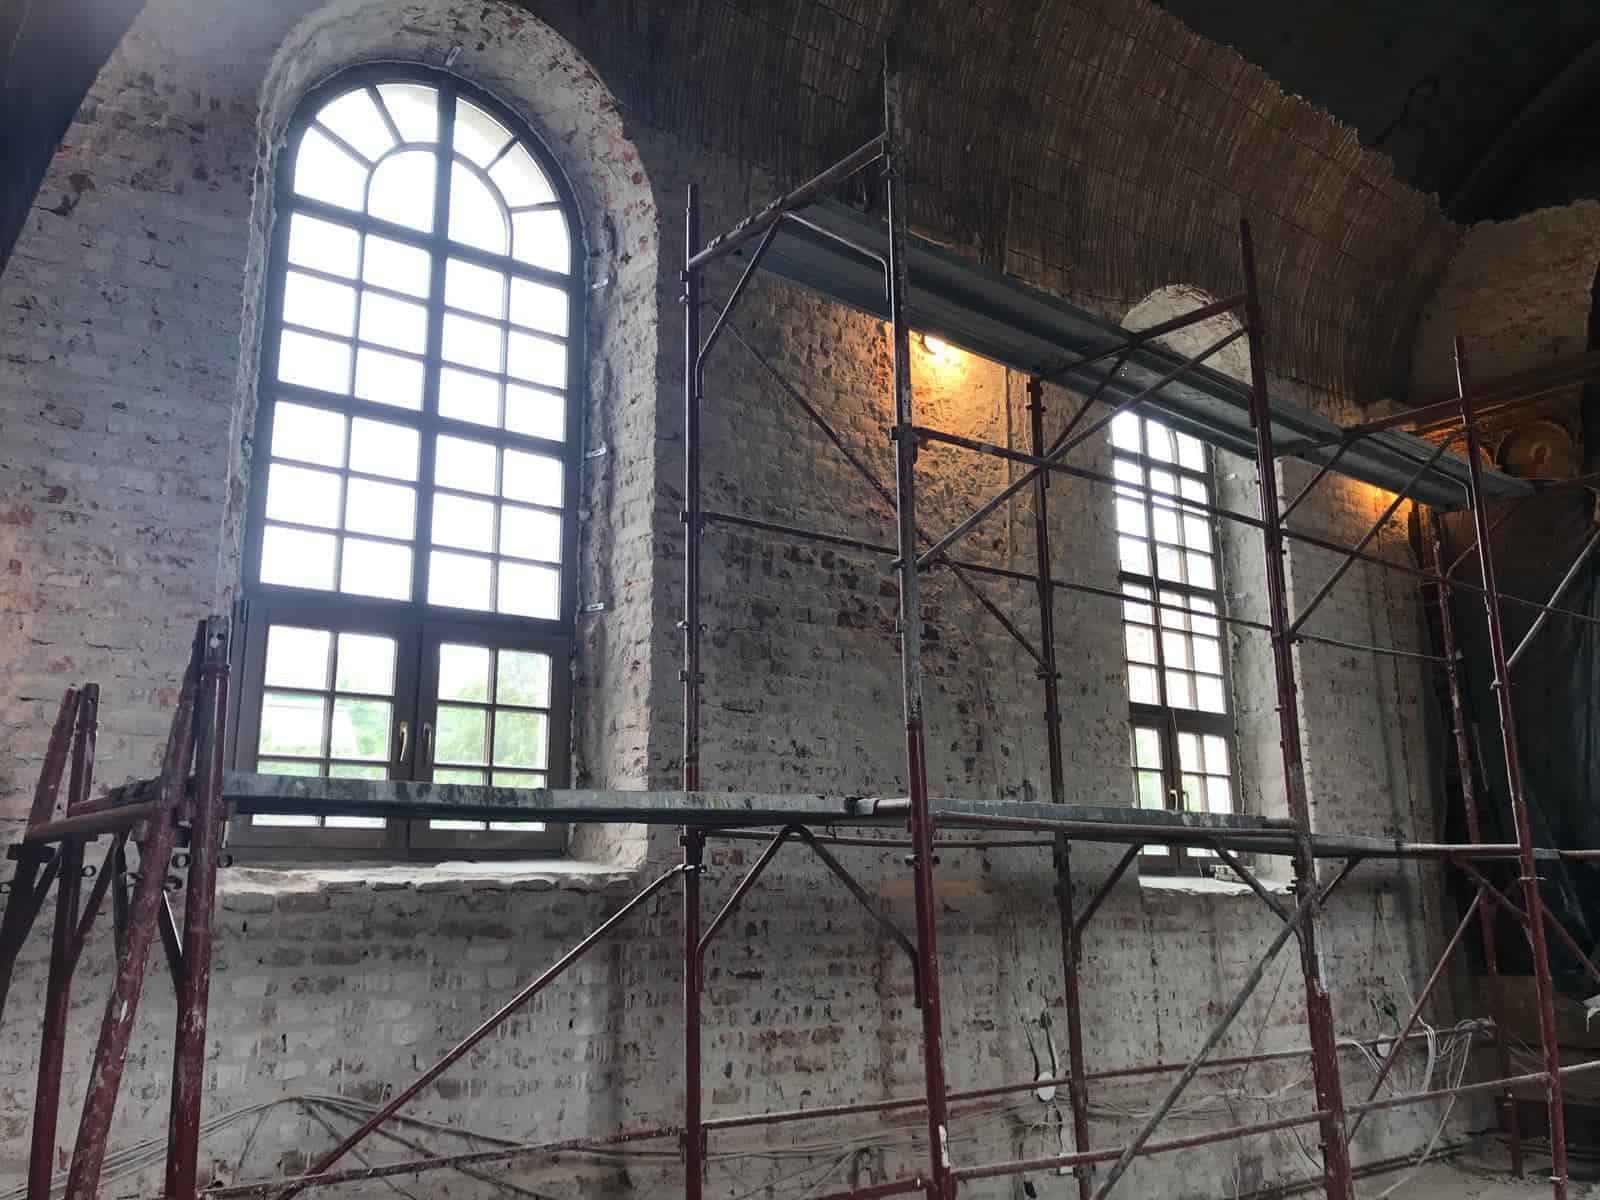 apel către sibieni: o biserică din gușterița veche de peste 150 de ani, are nevoie de peste 100.000 de euro pentru refacerea picturilor